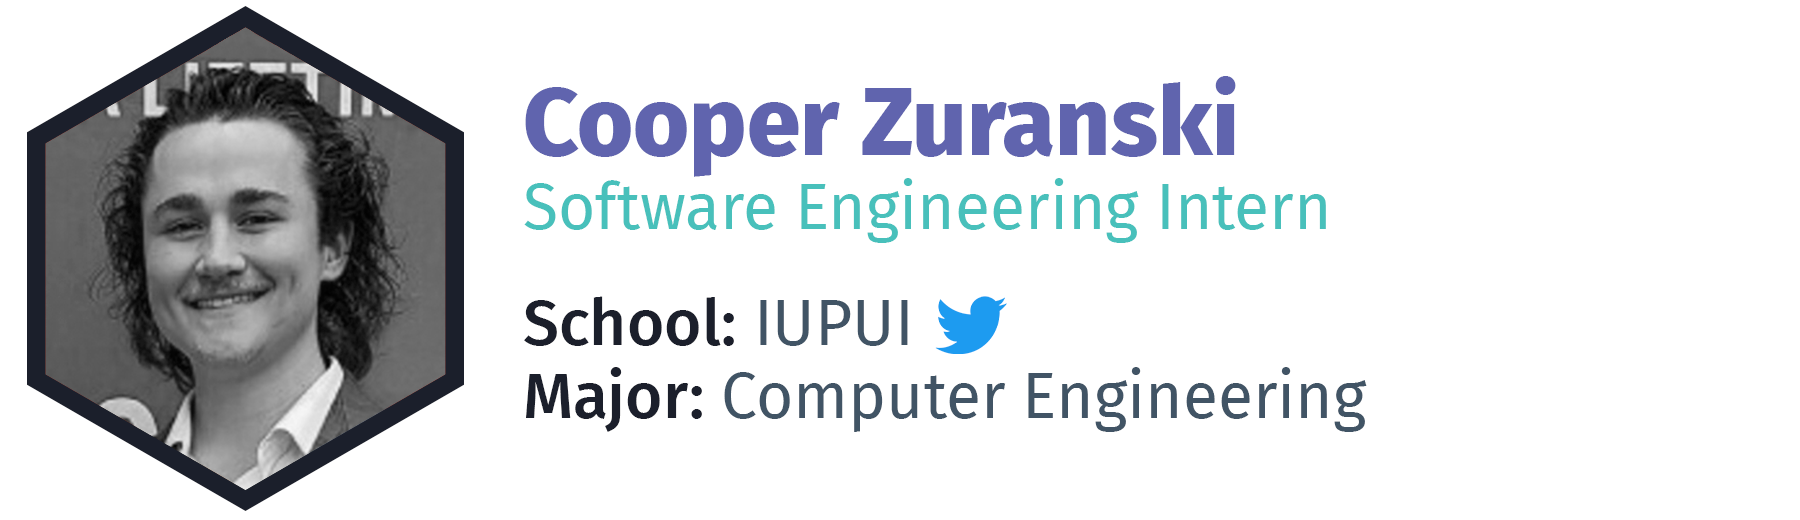 Cooper Zuranski - Software Engineering Intern